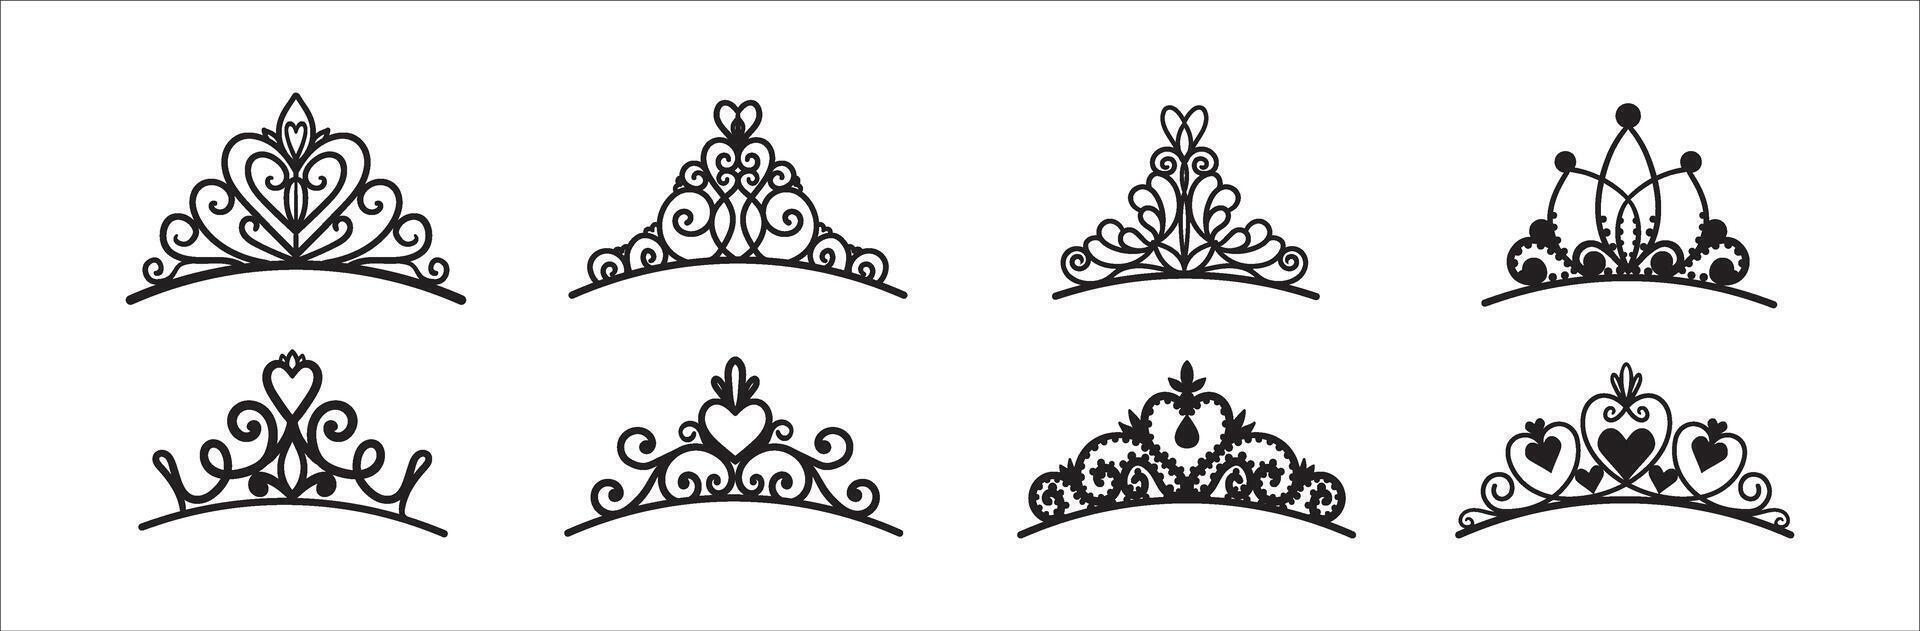 reeks van verschillend silhouetten van tiara's en kronen. luxe prins en prinses hoofdtooien in tekening stijl. vector